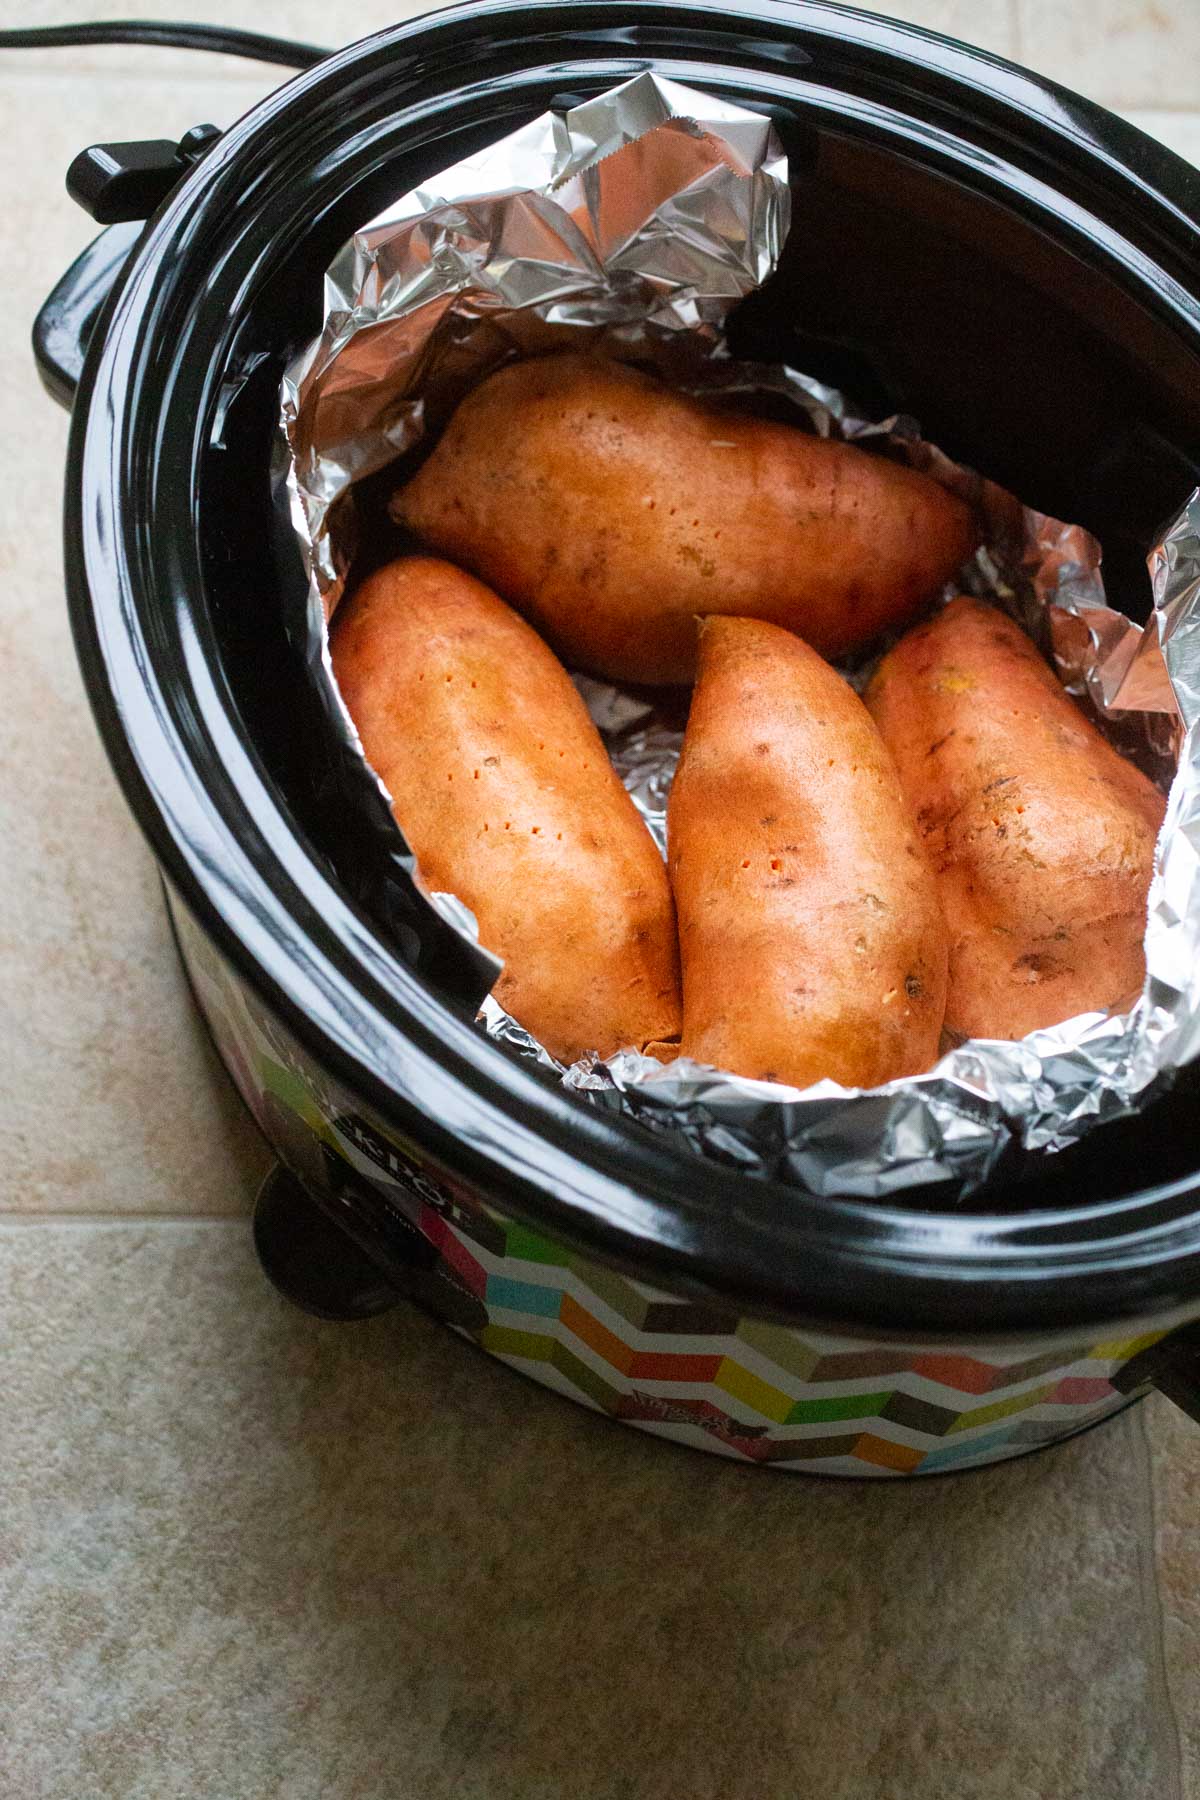 A crockpot with sweet potatoes inside.